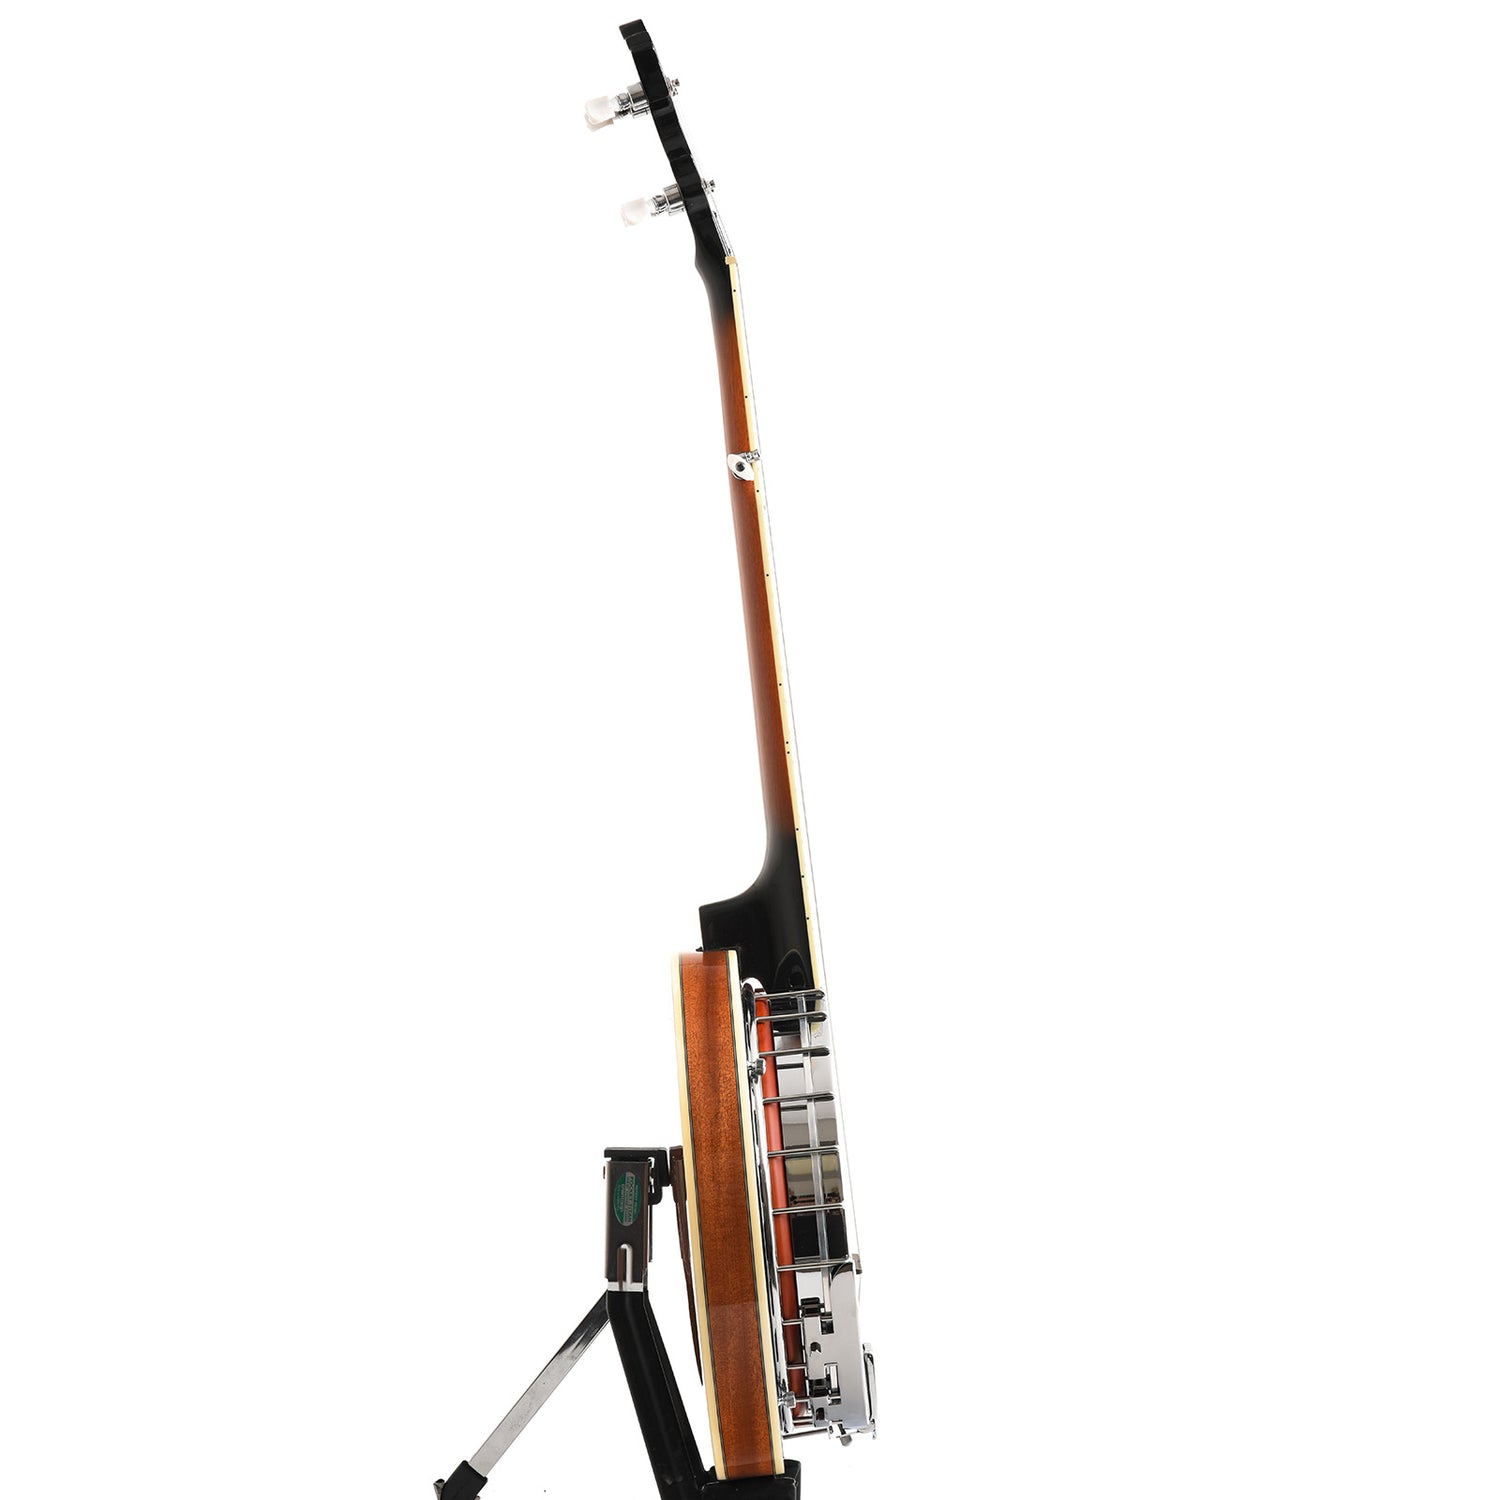 Image 13 of Ibanez B200 Resonator Banjo - SKU# IB200 : Product Type Resonator Back Banjos : Elderly Instruments